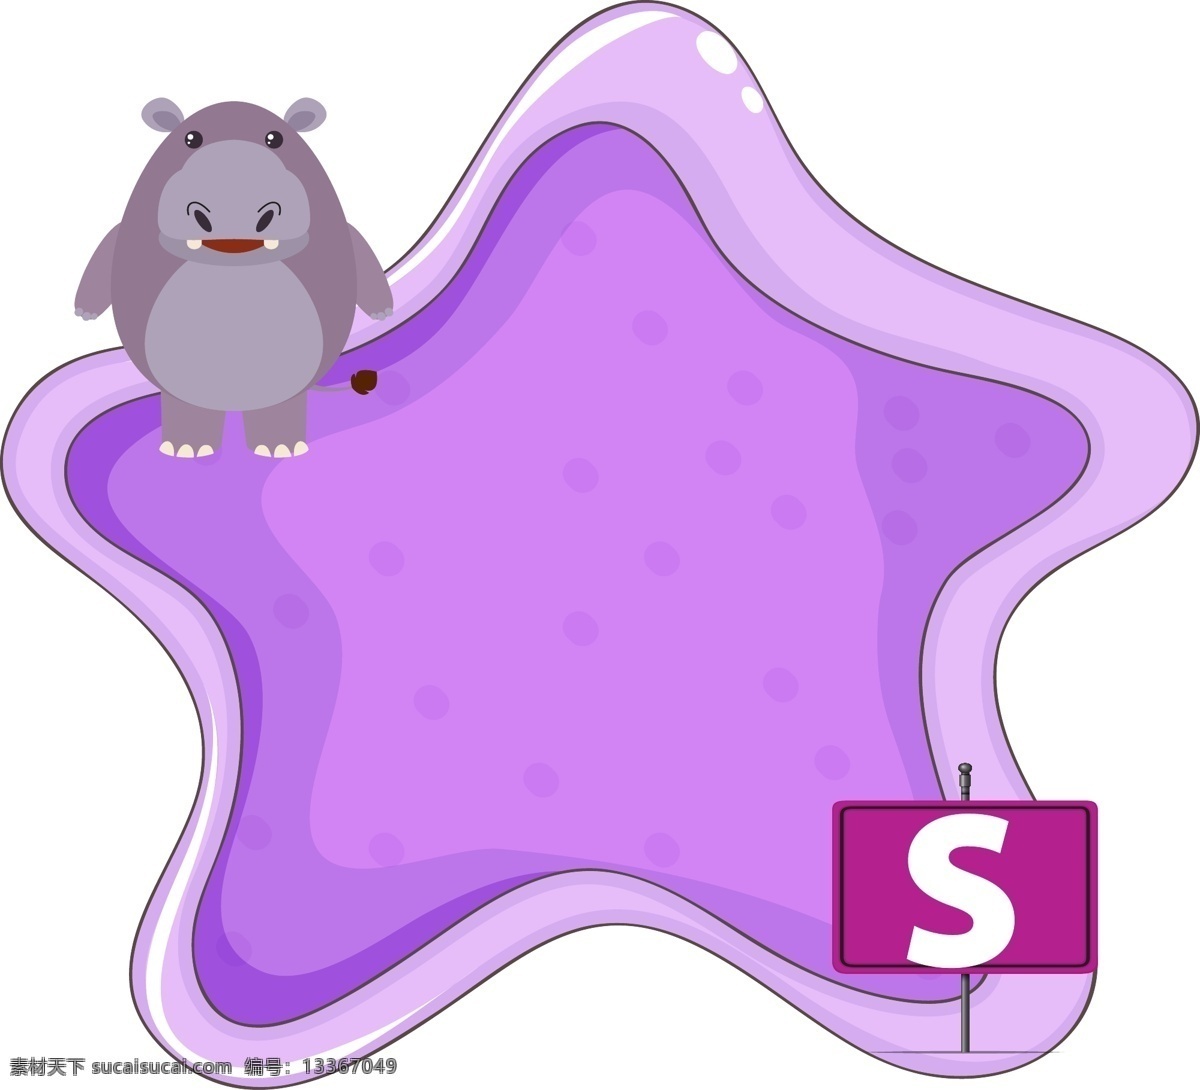 紫色 星星 动物 边框 元素 紫色星星 动物边框 时尚边框 潮流 花纹 卡通动物 可爱小动物 英文字母 星星边框 潮流边框